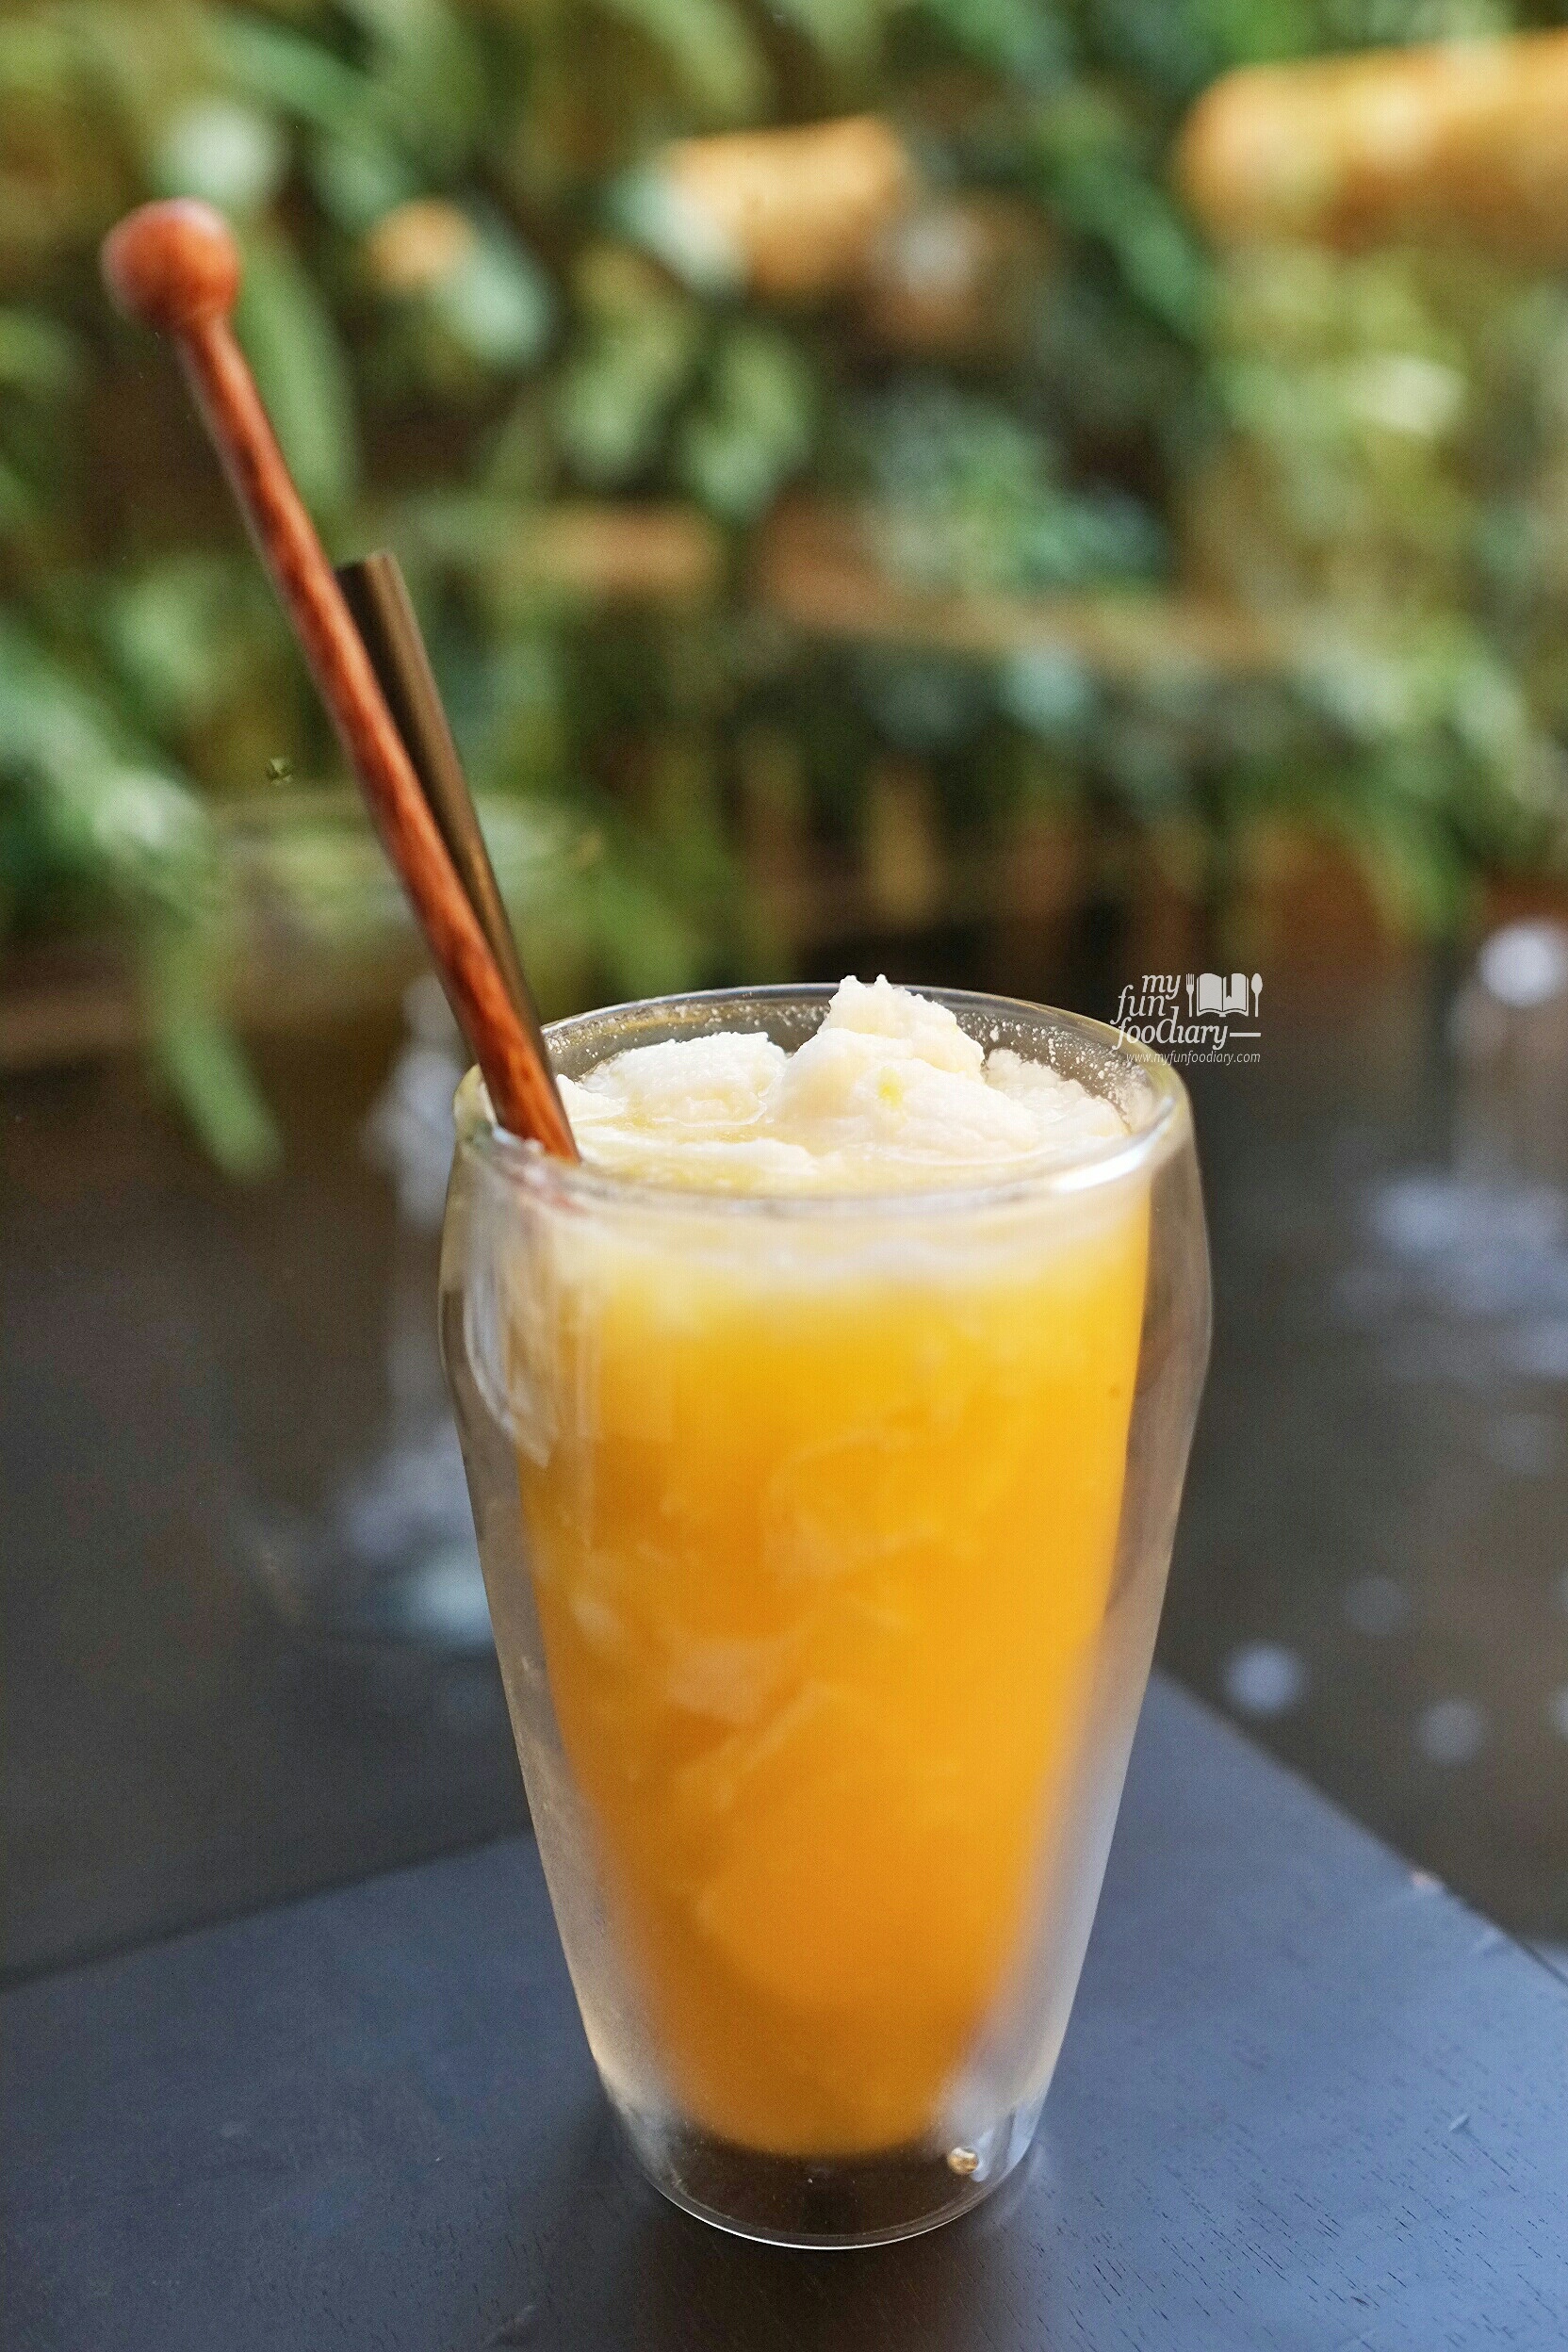 Kopyor Siam Orange at Tesate Menteng by Myfunfoodiary